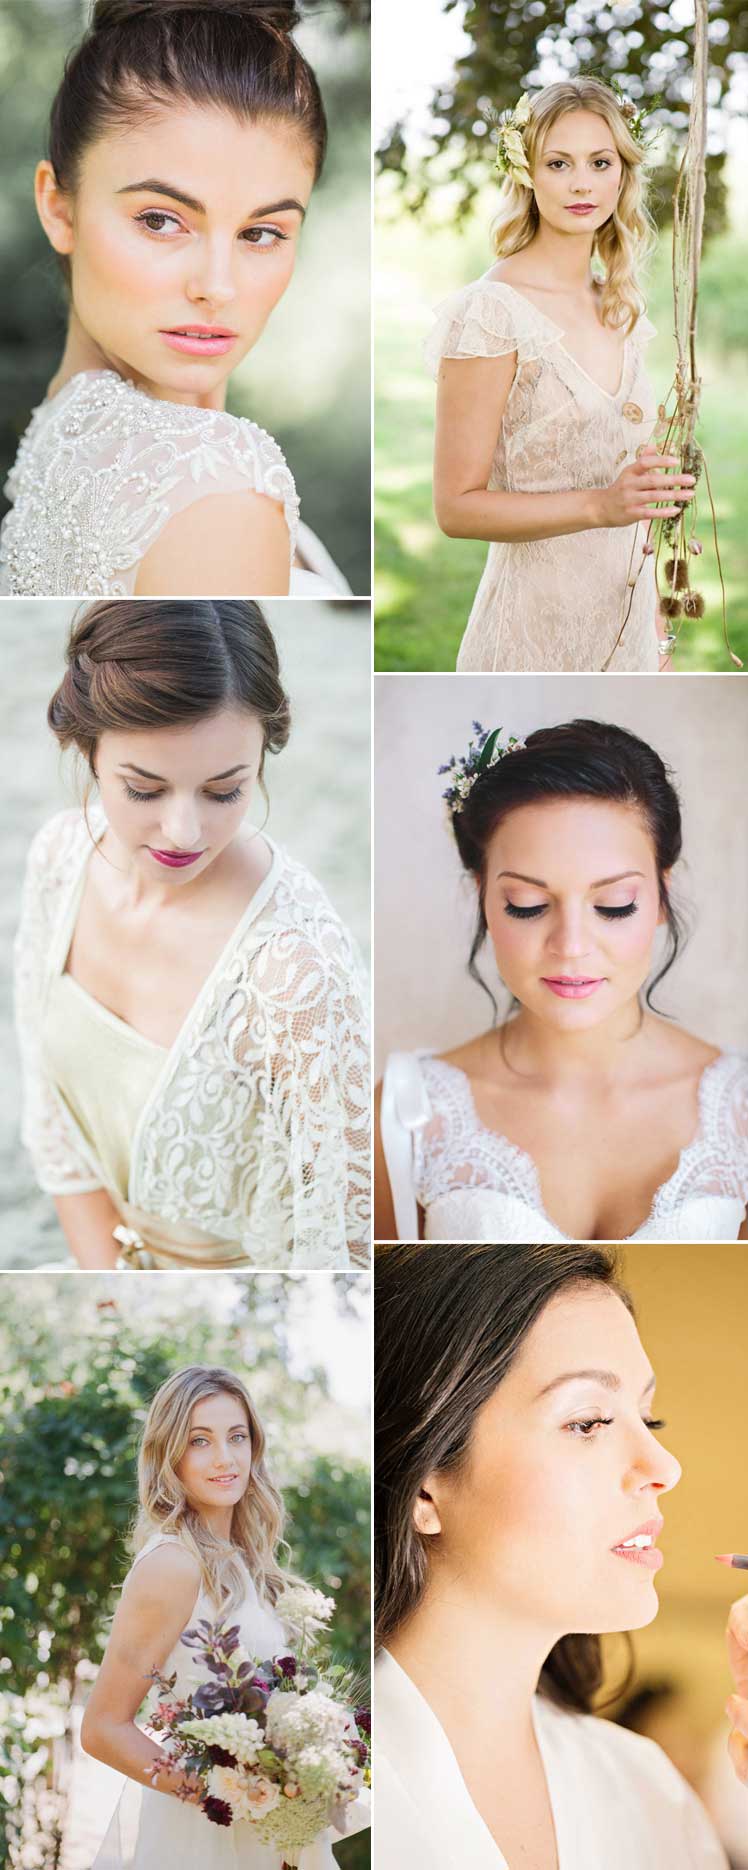 Beautiful bridal make-up inspiration